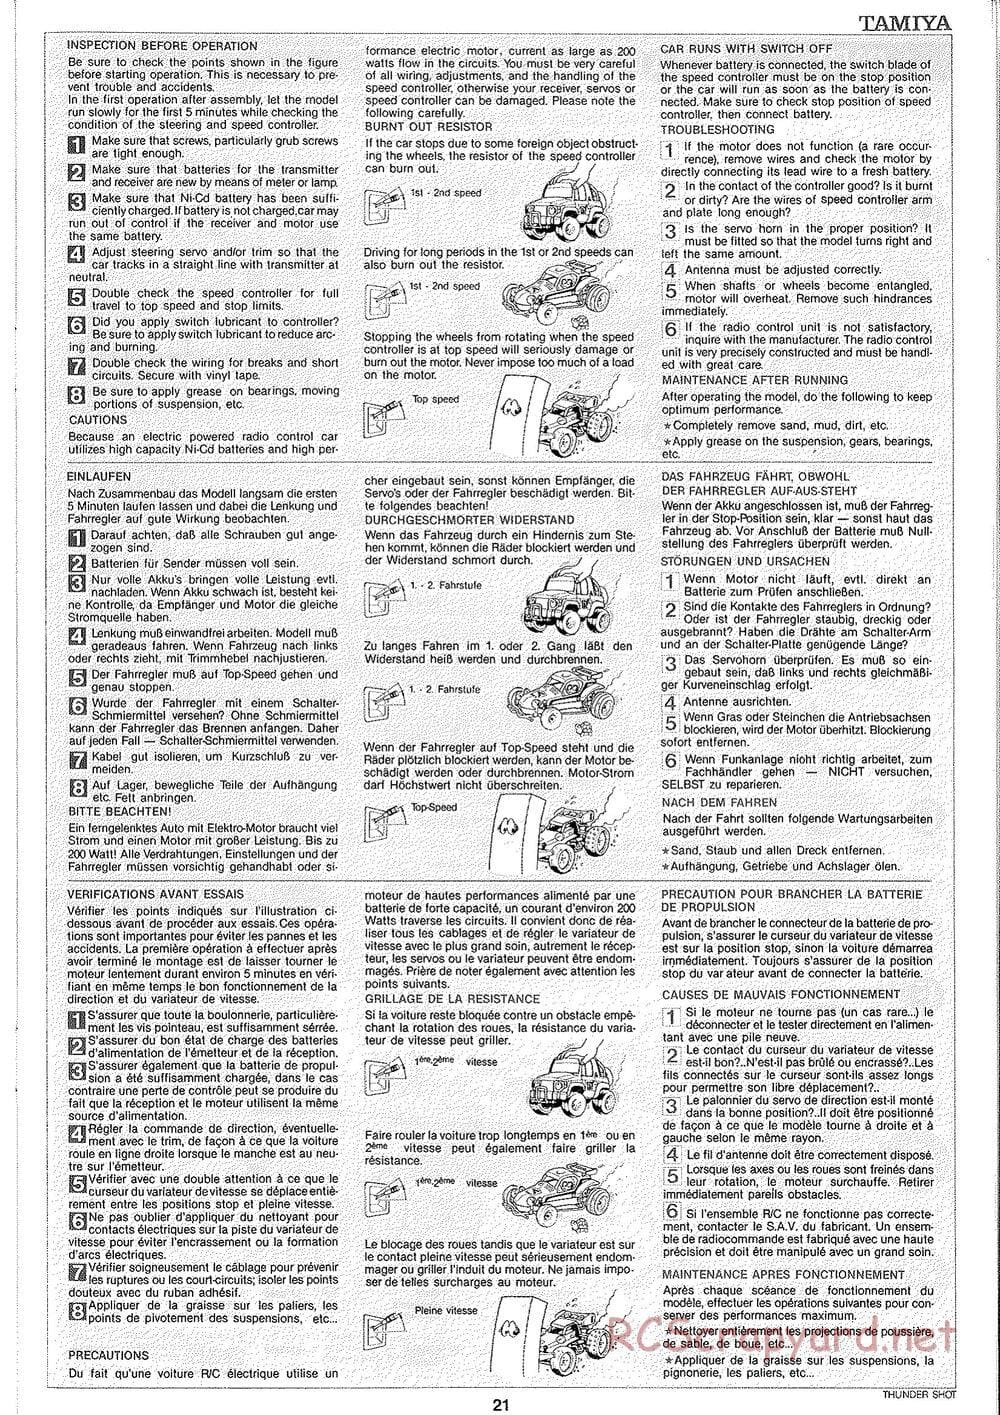 Tamiya - Thunder Shot - TS1 Chassis - Manual - Page 22